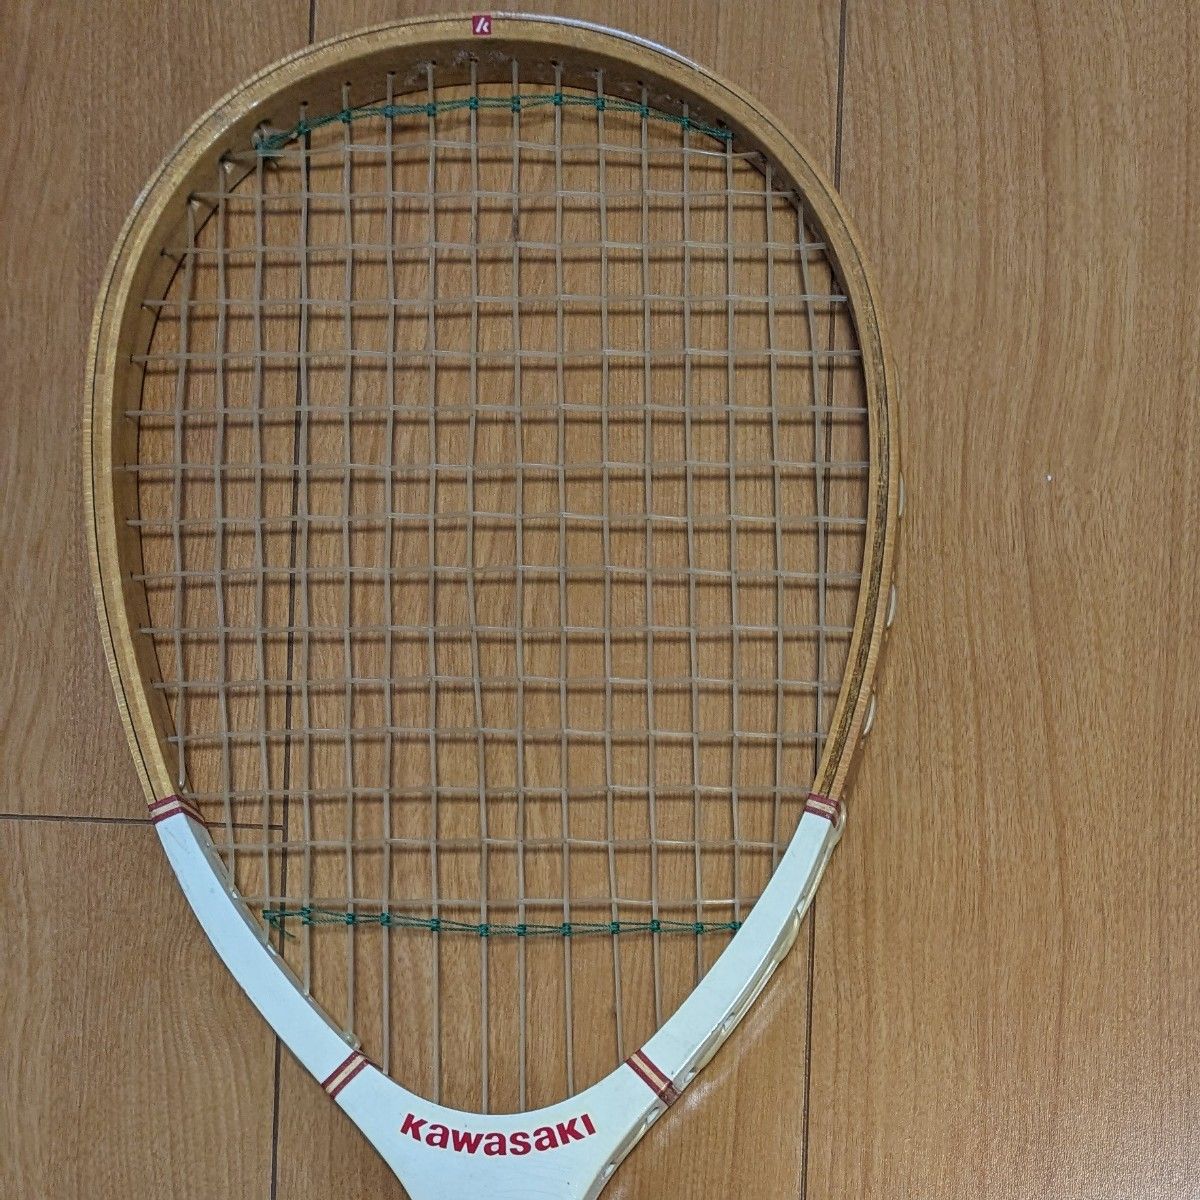 木製テニスラケット